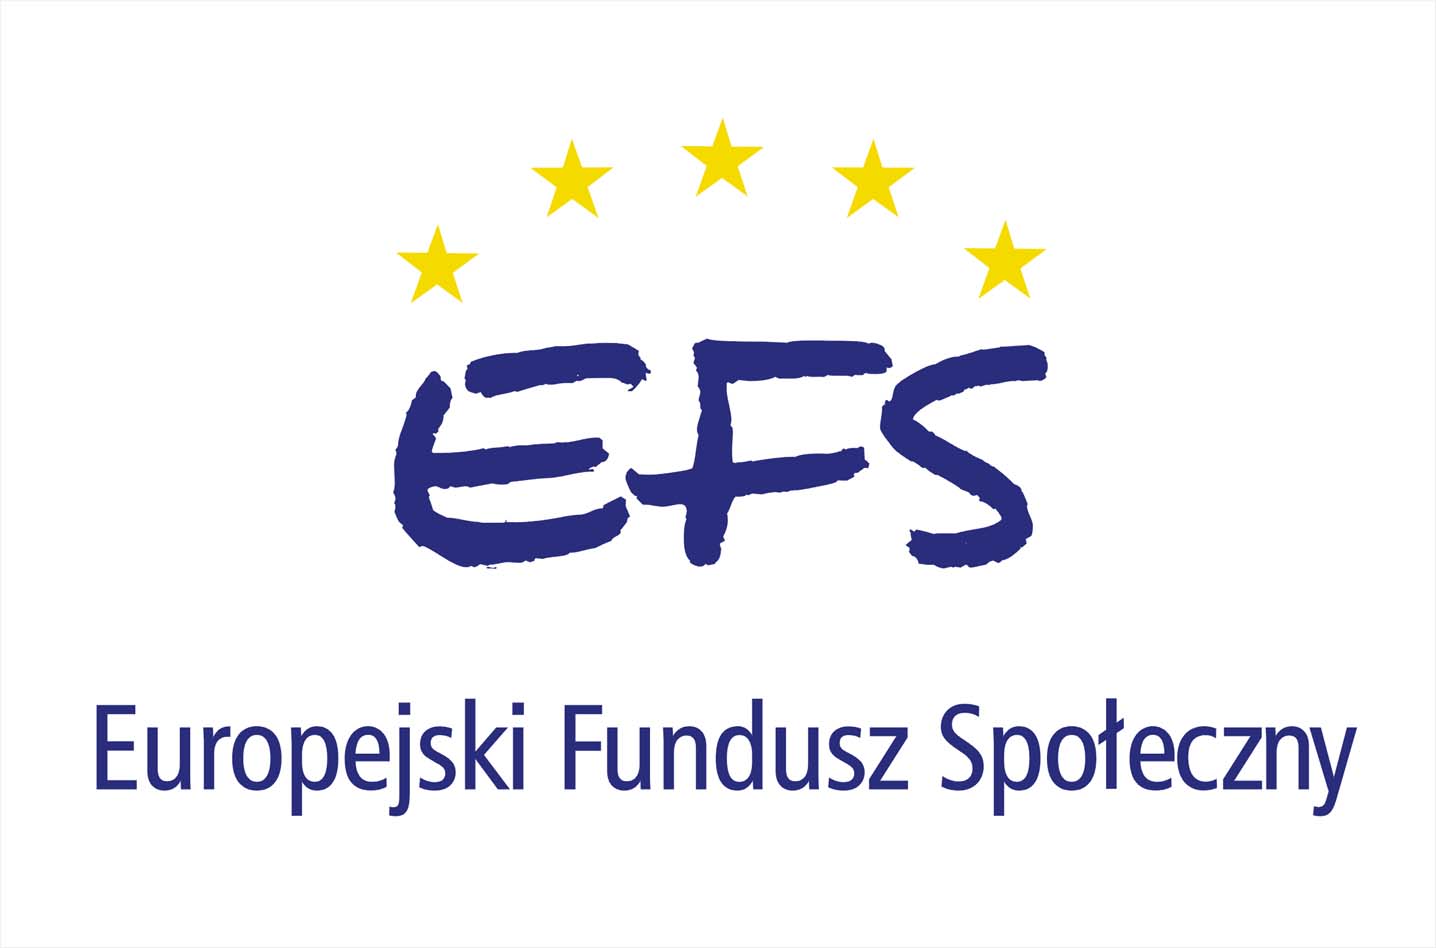 Projekt finansowany ze środków Europejskiego Funduszu Społecznego